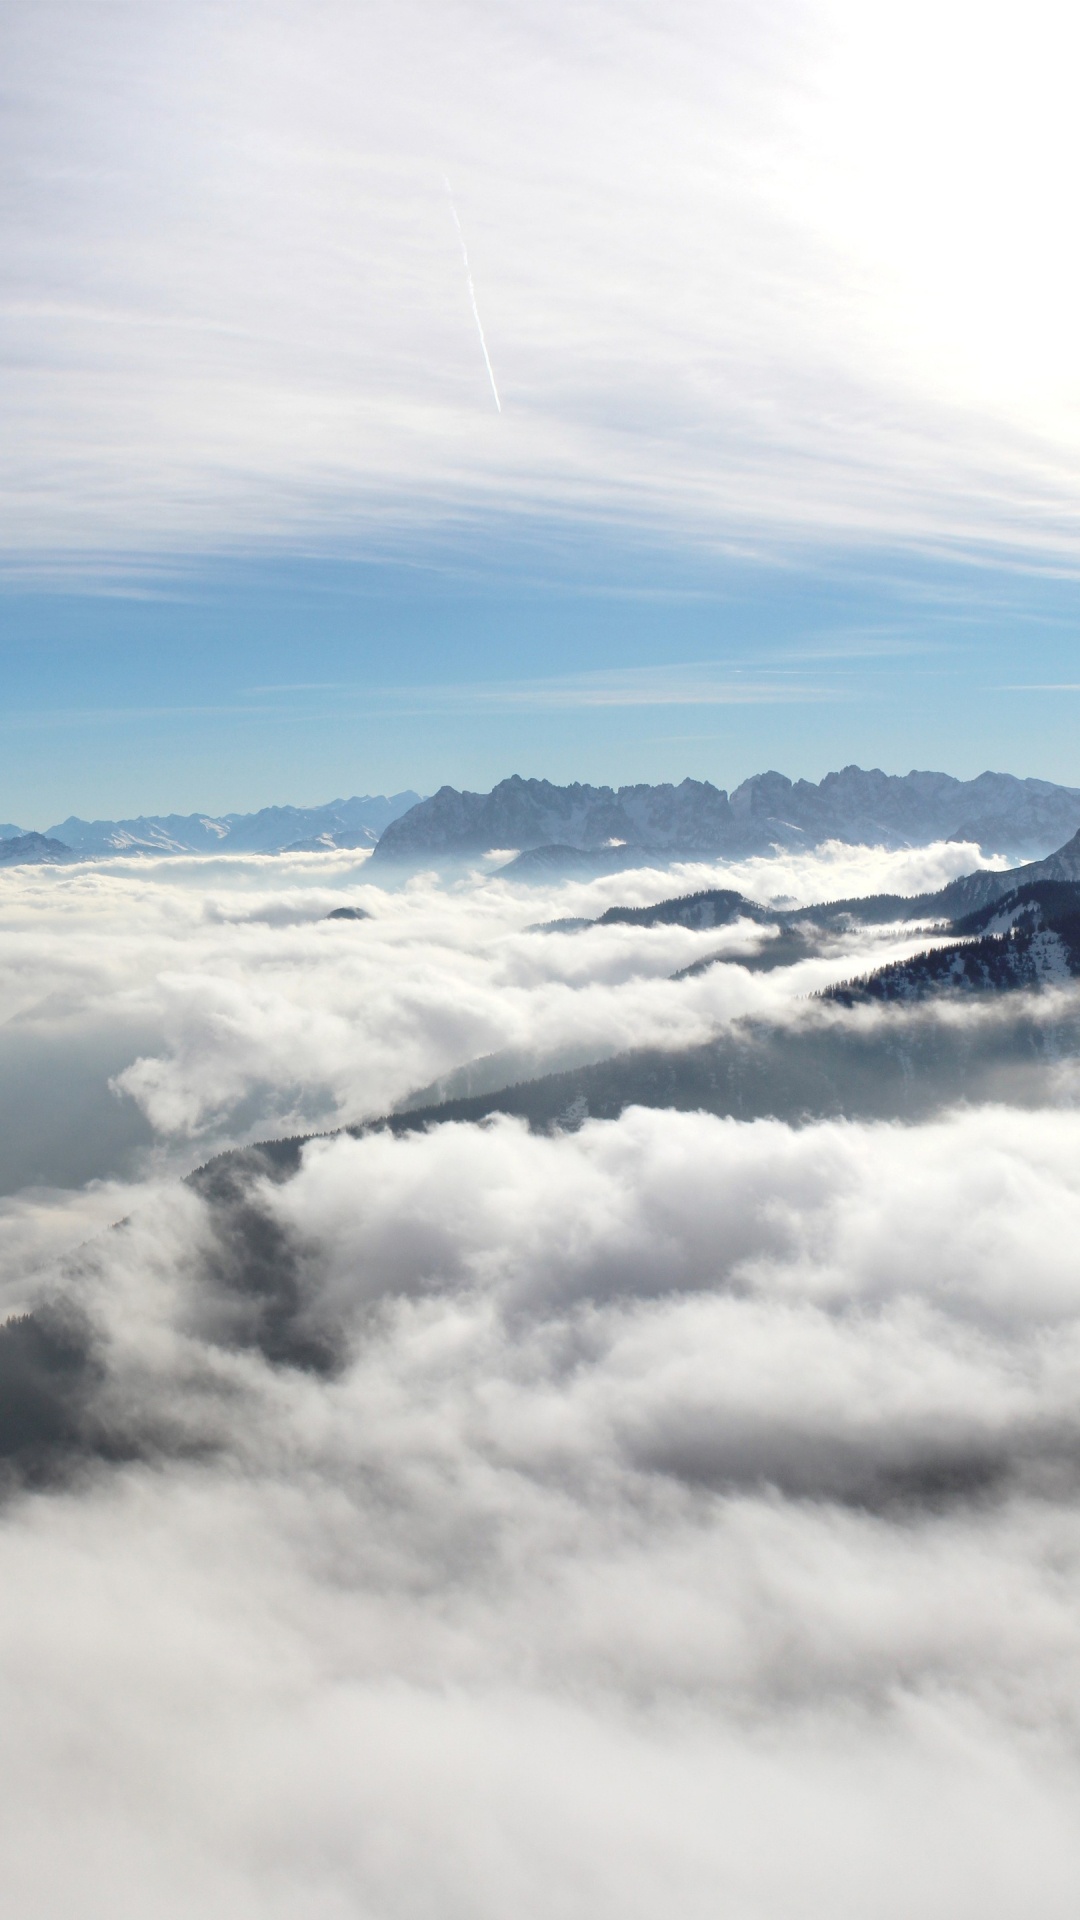 Nuages Blancs Au-dessus Des Montagnes Couvertes de Neige. Wallpaper in 1080x1920 Resolution